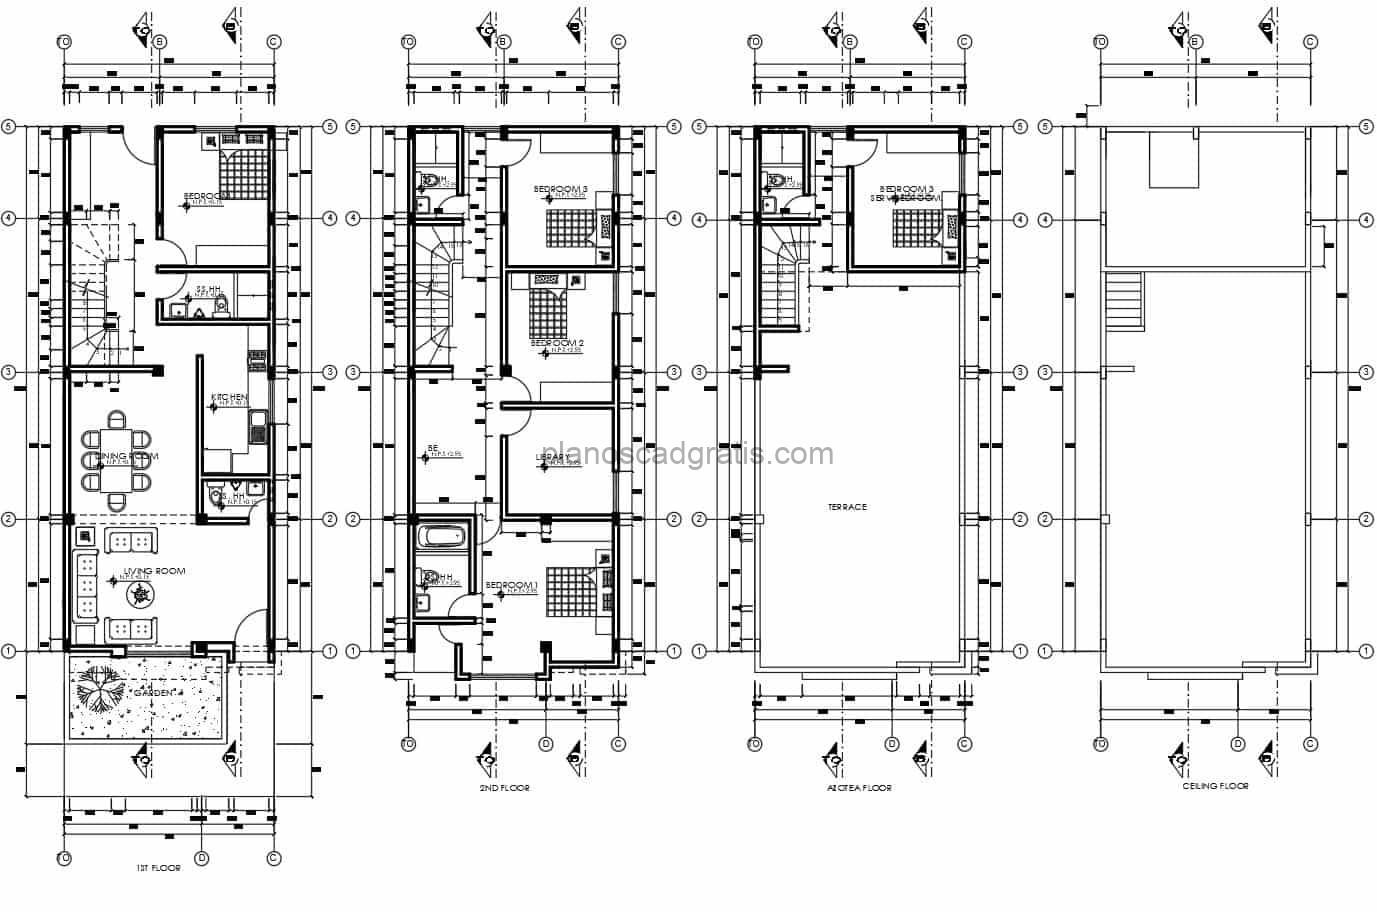 planos de casa de tres niveles con cuatro habitaciones y baños independientes planos en formato dwg de autocad para descarga gratis